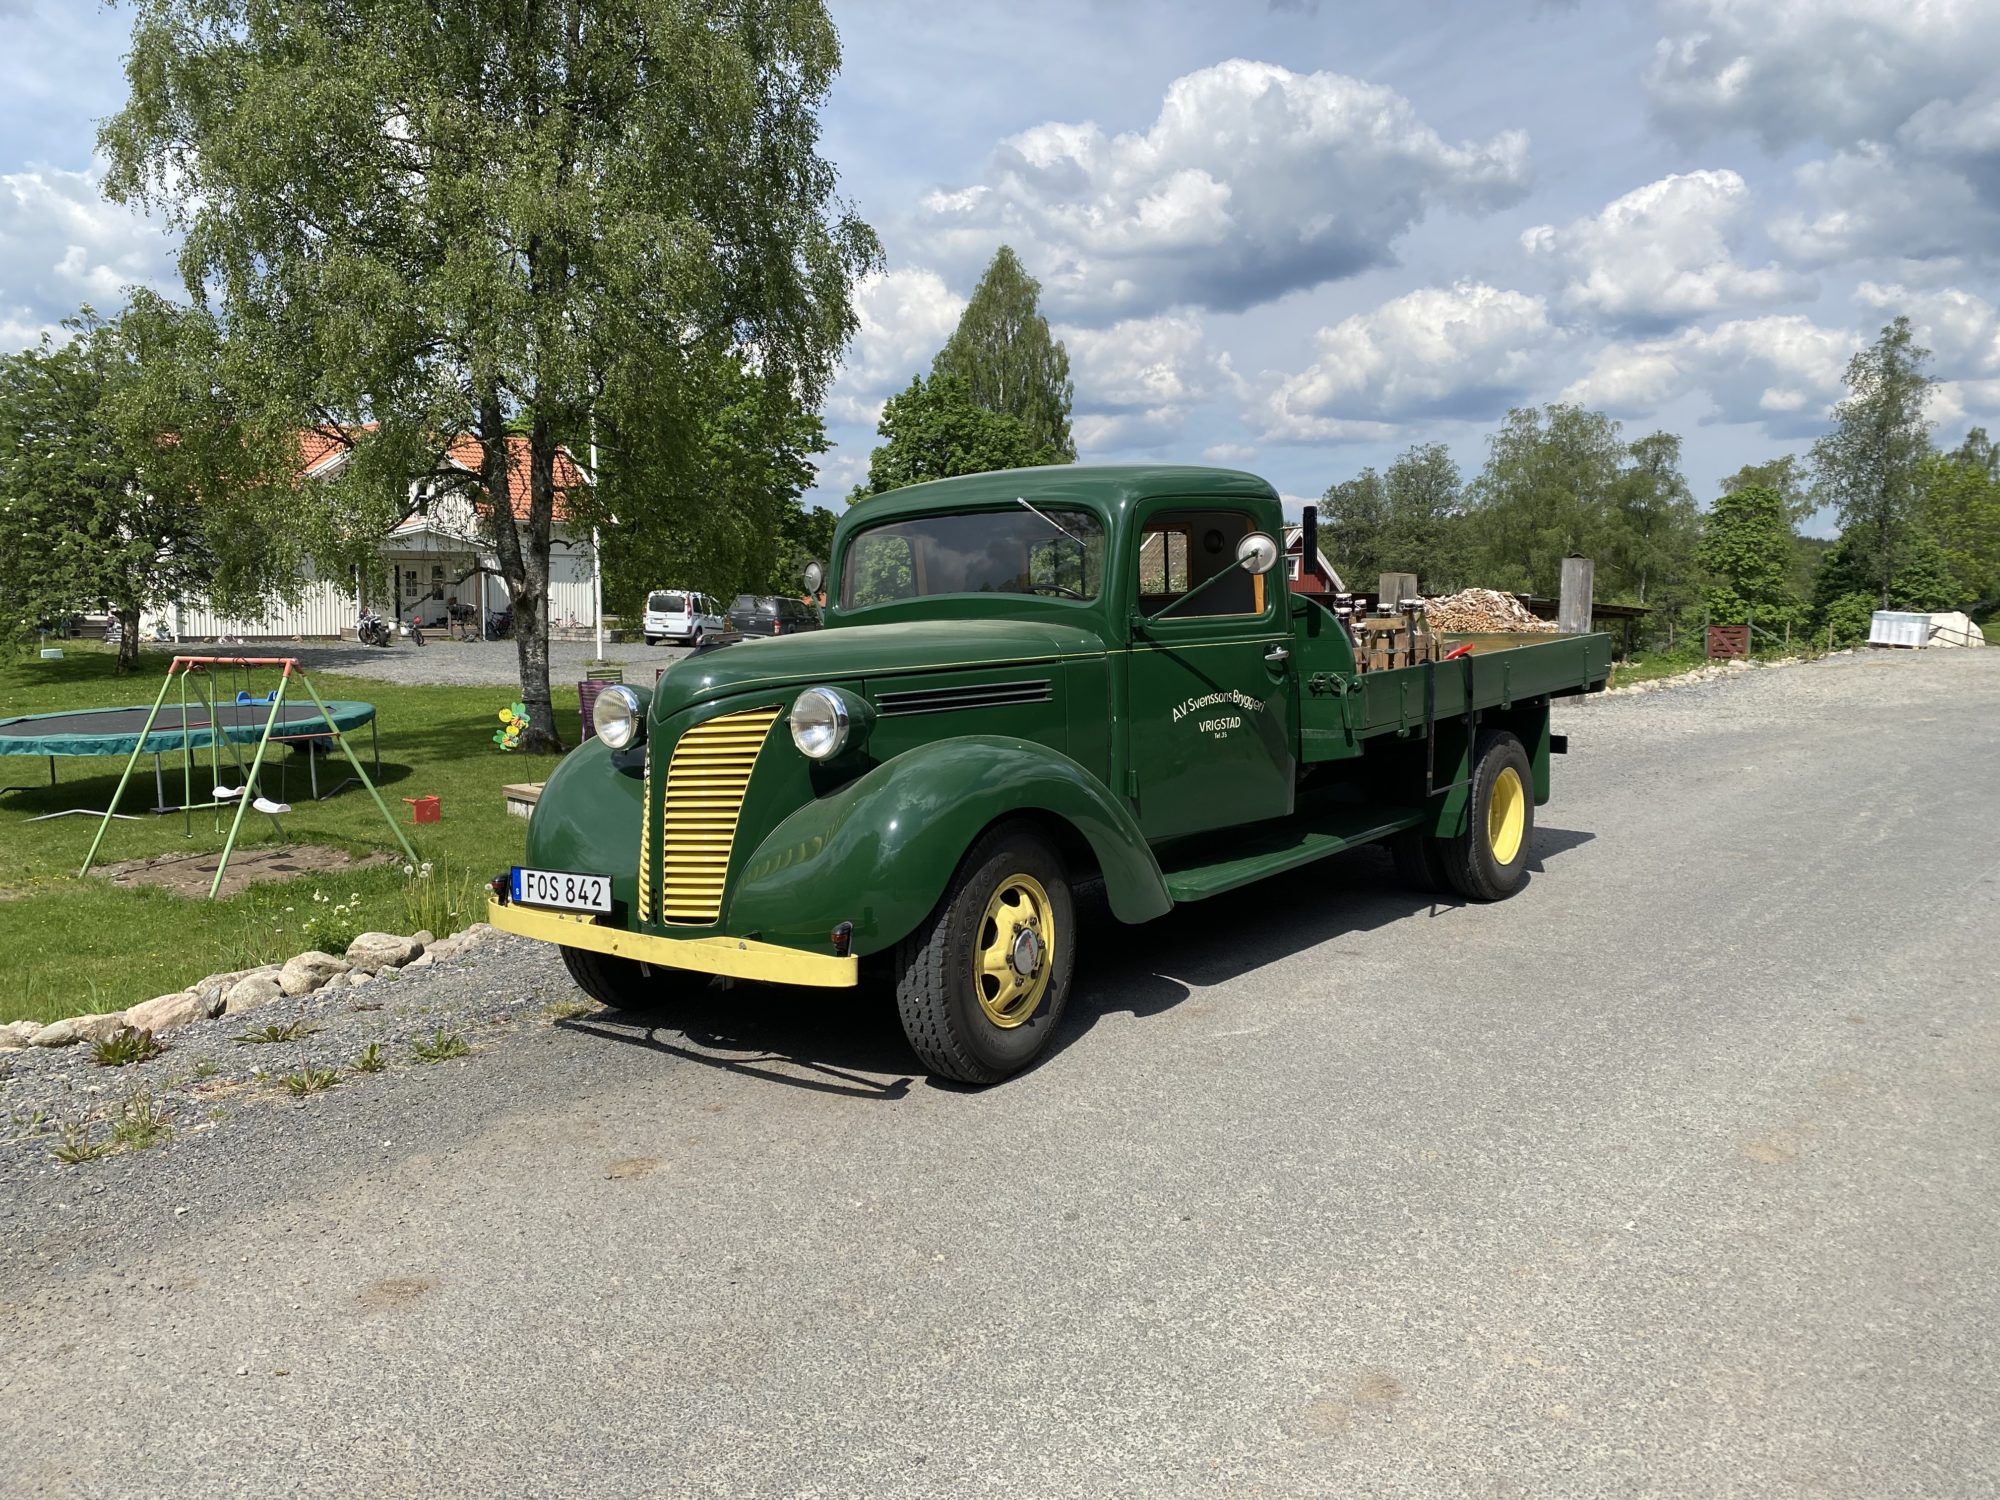 Mycket fin och charmig lastbil
Noggrant renoverad från grunden
Full dokumentation och ägarhistorik

Såld!